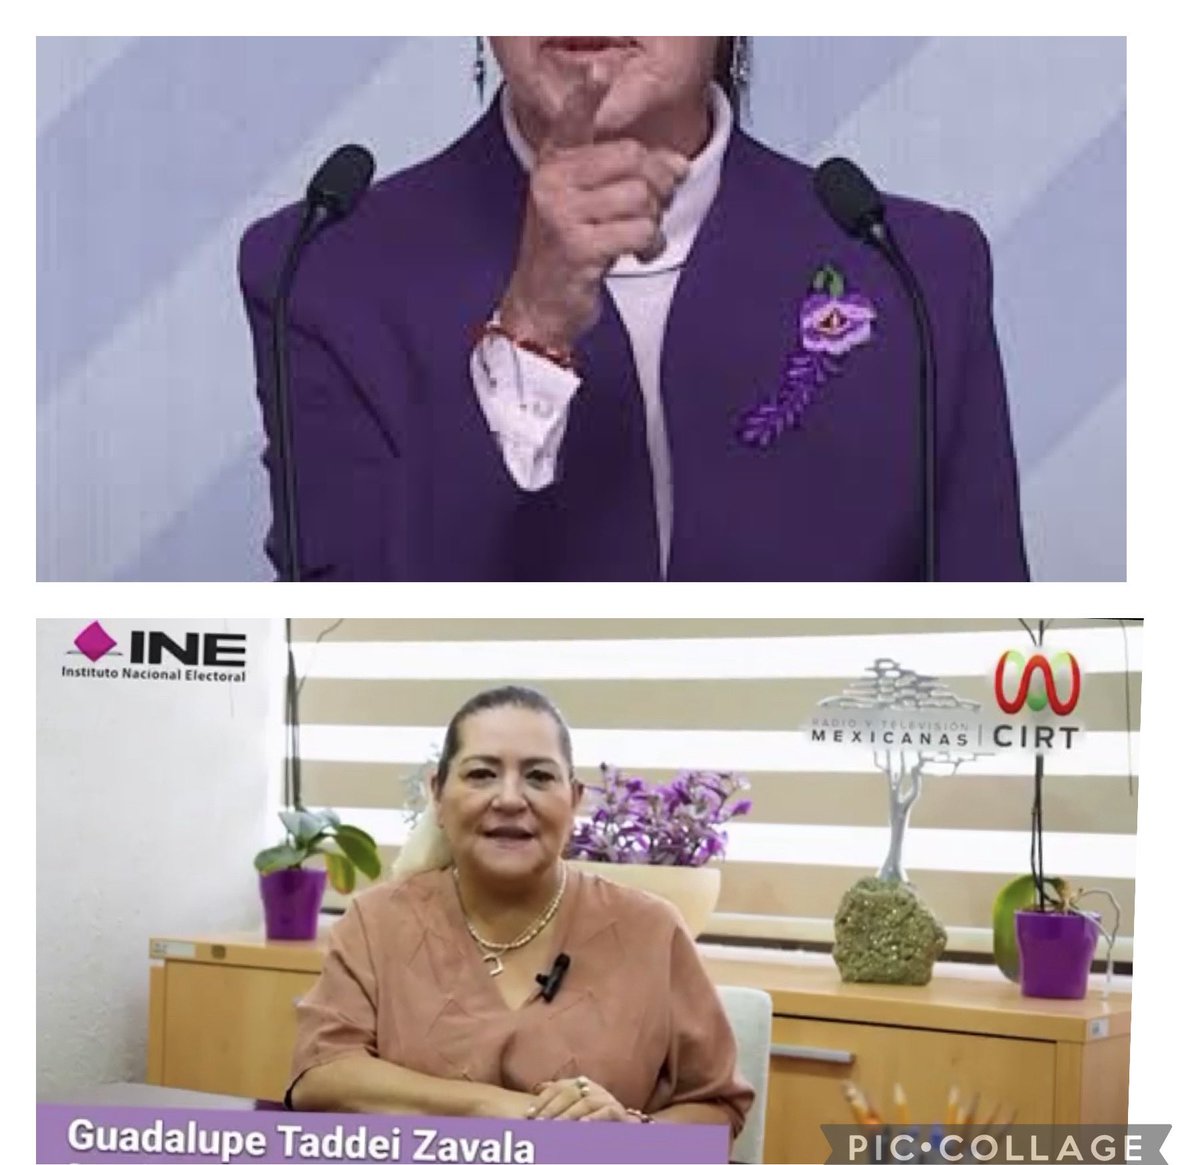 Guadalupe Taddei introduce el morado en el INE para ser fiel a la identidad visual de Morena.
#LenguajeSinPalabras